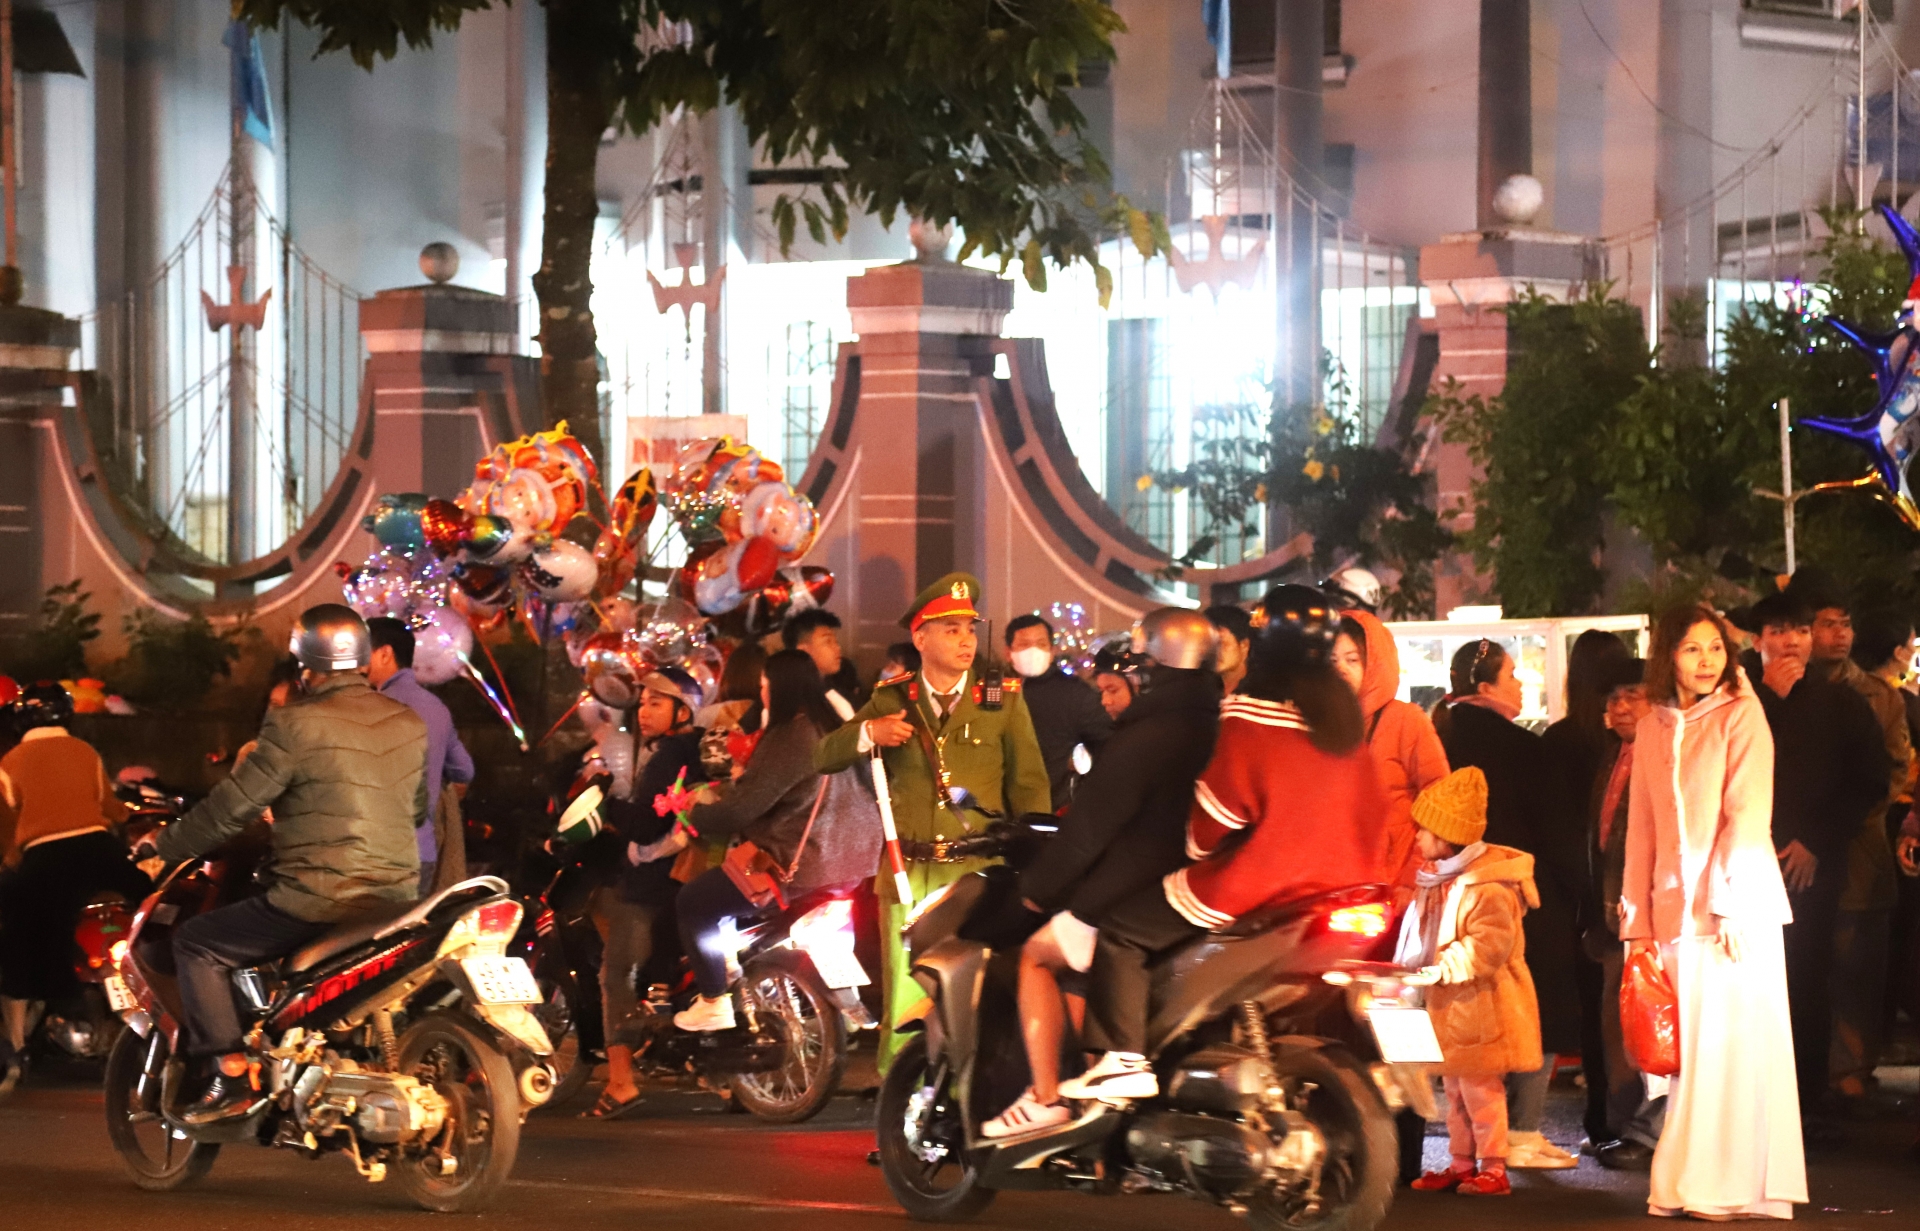 Lực lượng công an làm nhiệm vụ đảm bảo an ninh trật tự, an toàn giao thông trong đêm Giáng sinh tại TP Bảo Lộc